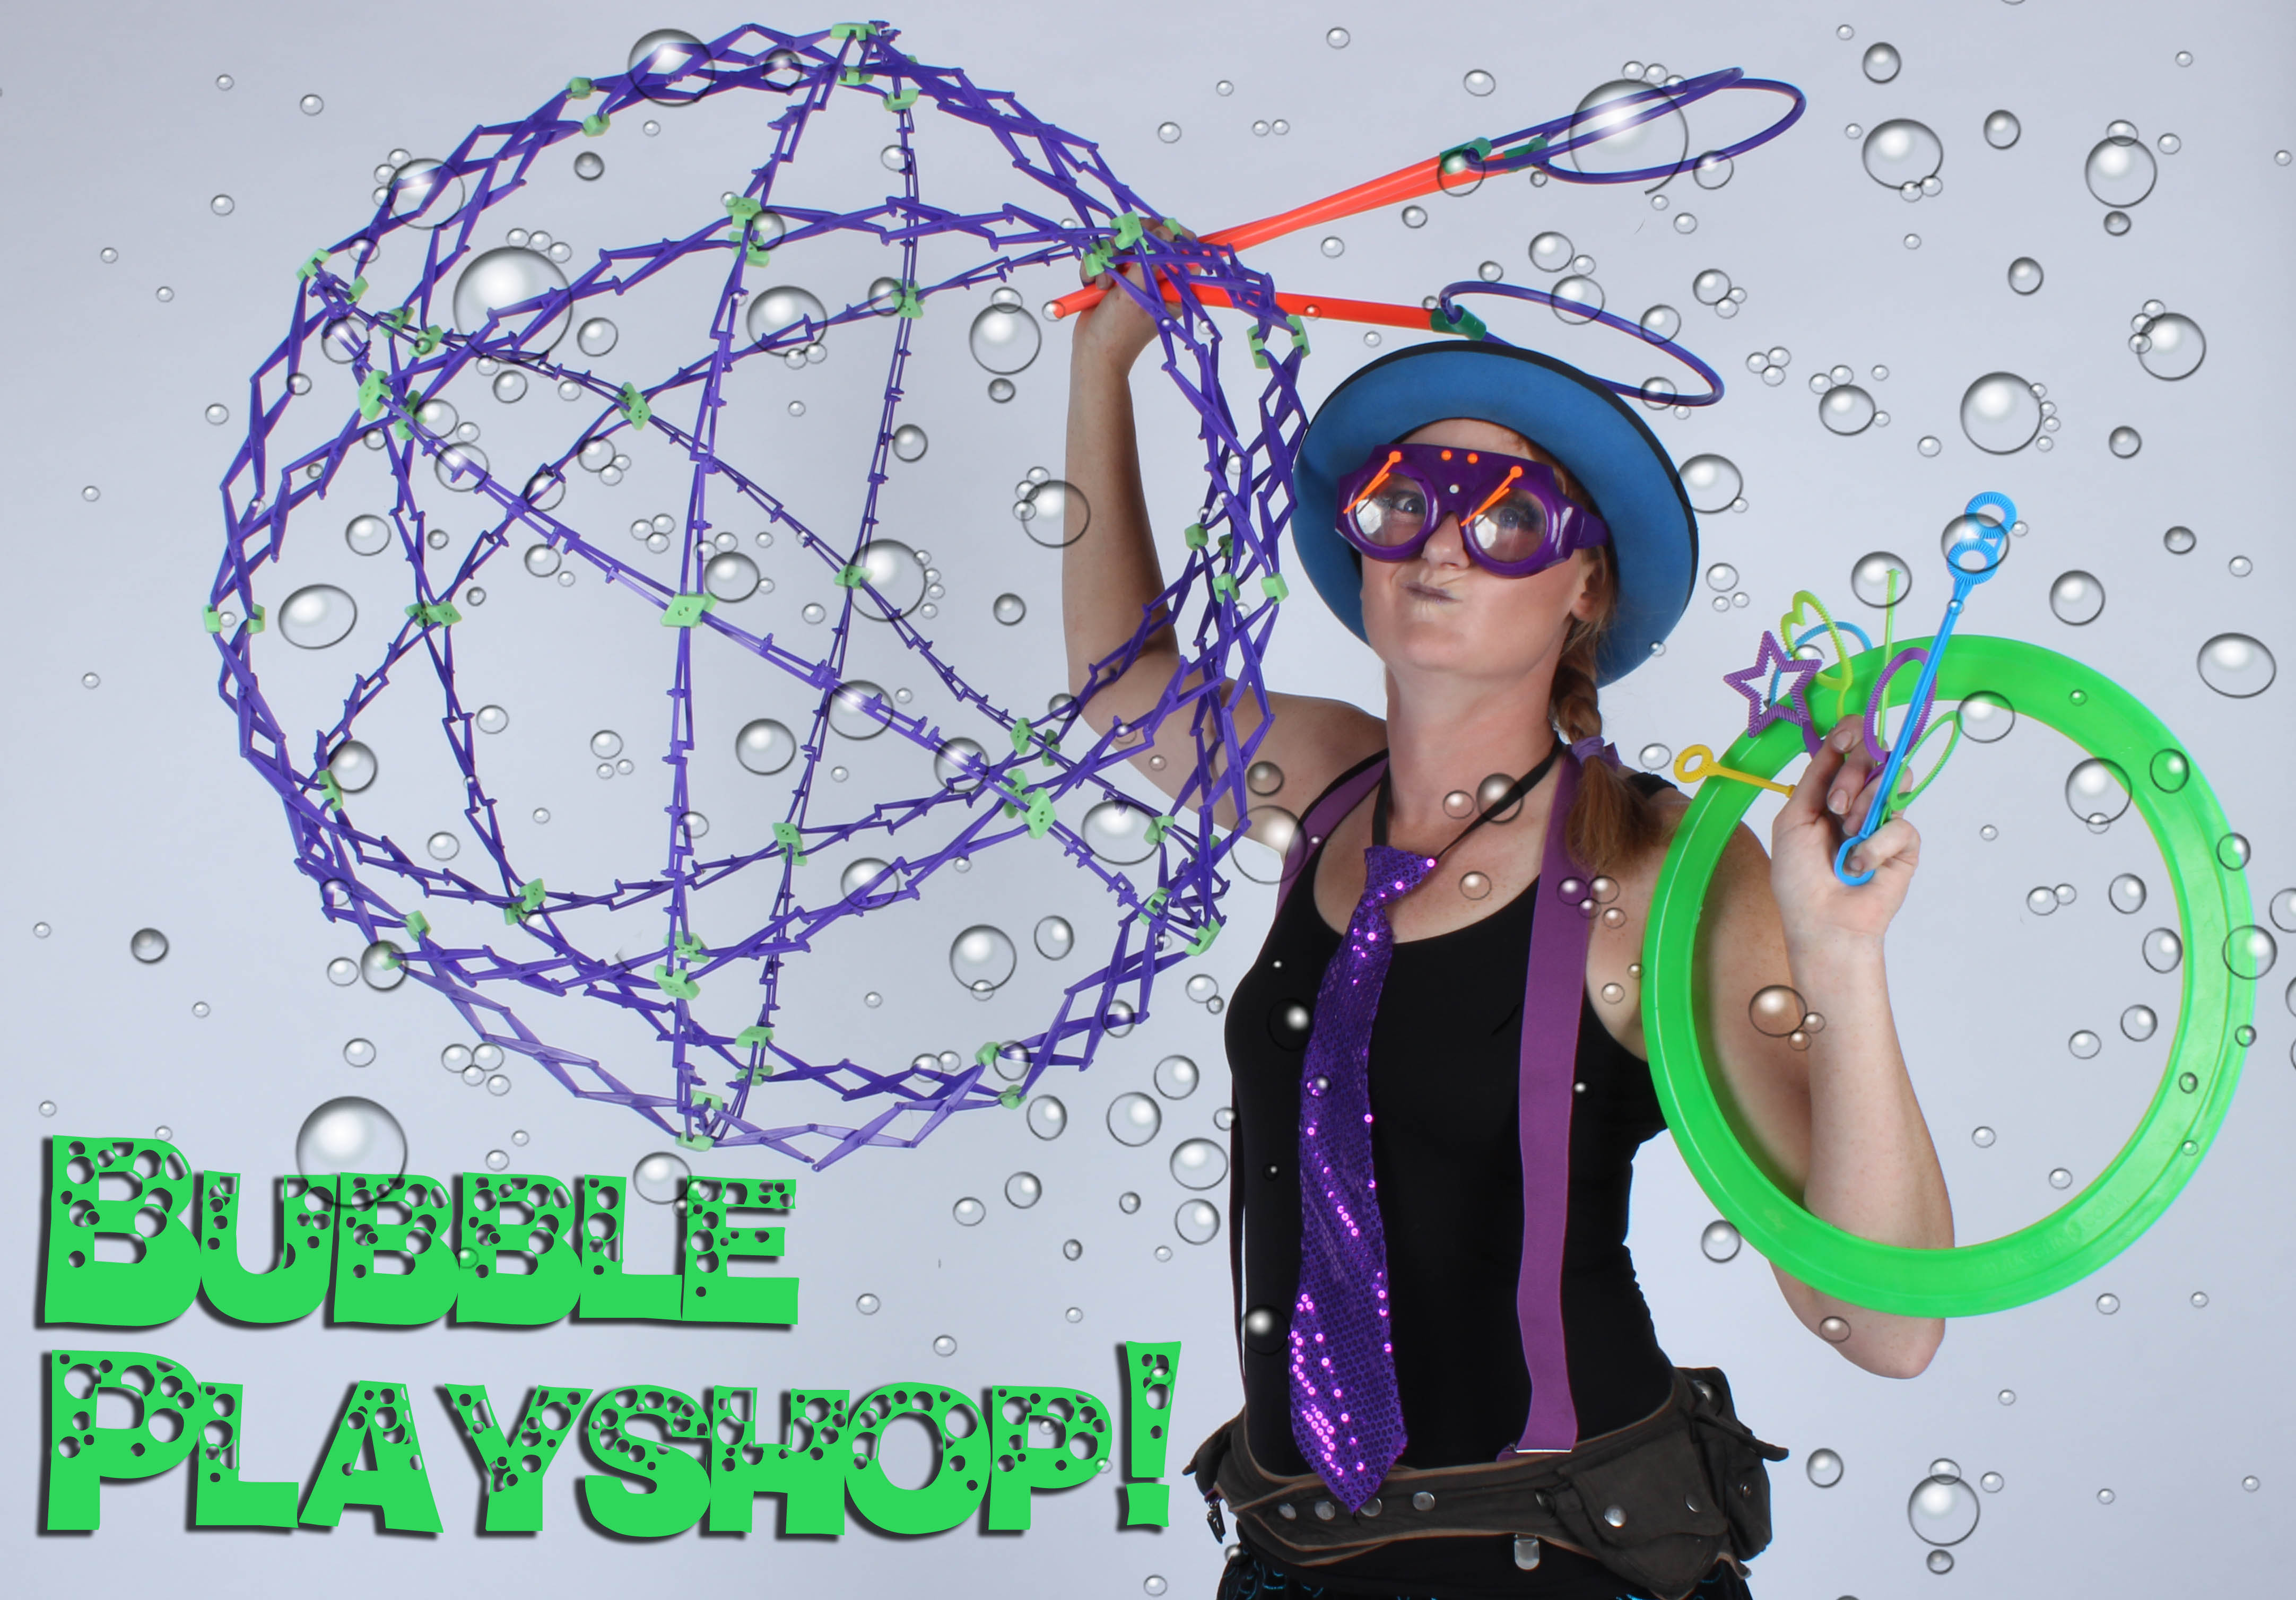 Bubbles, Bubble wand, toys, tools, bubble banner, bubble play shop